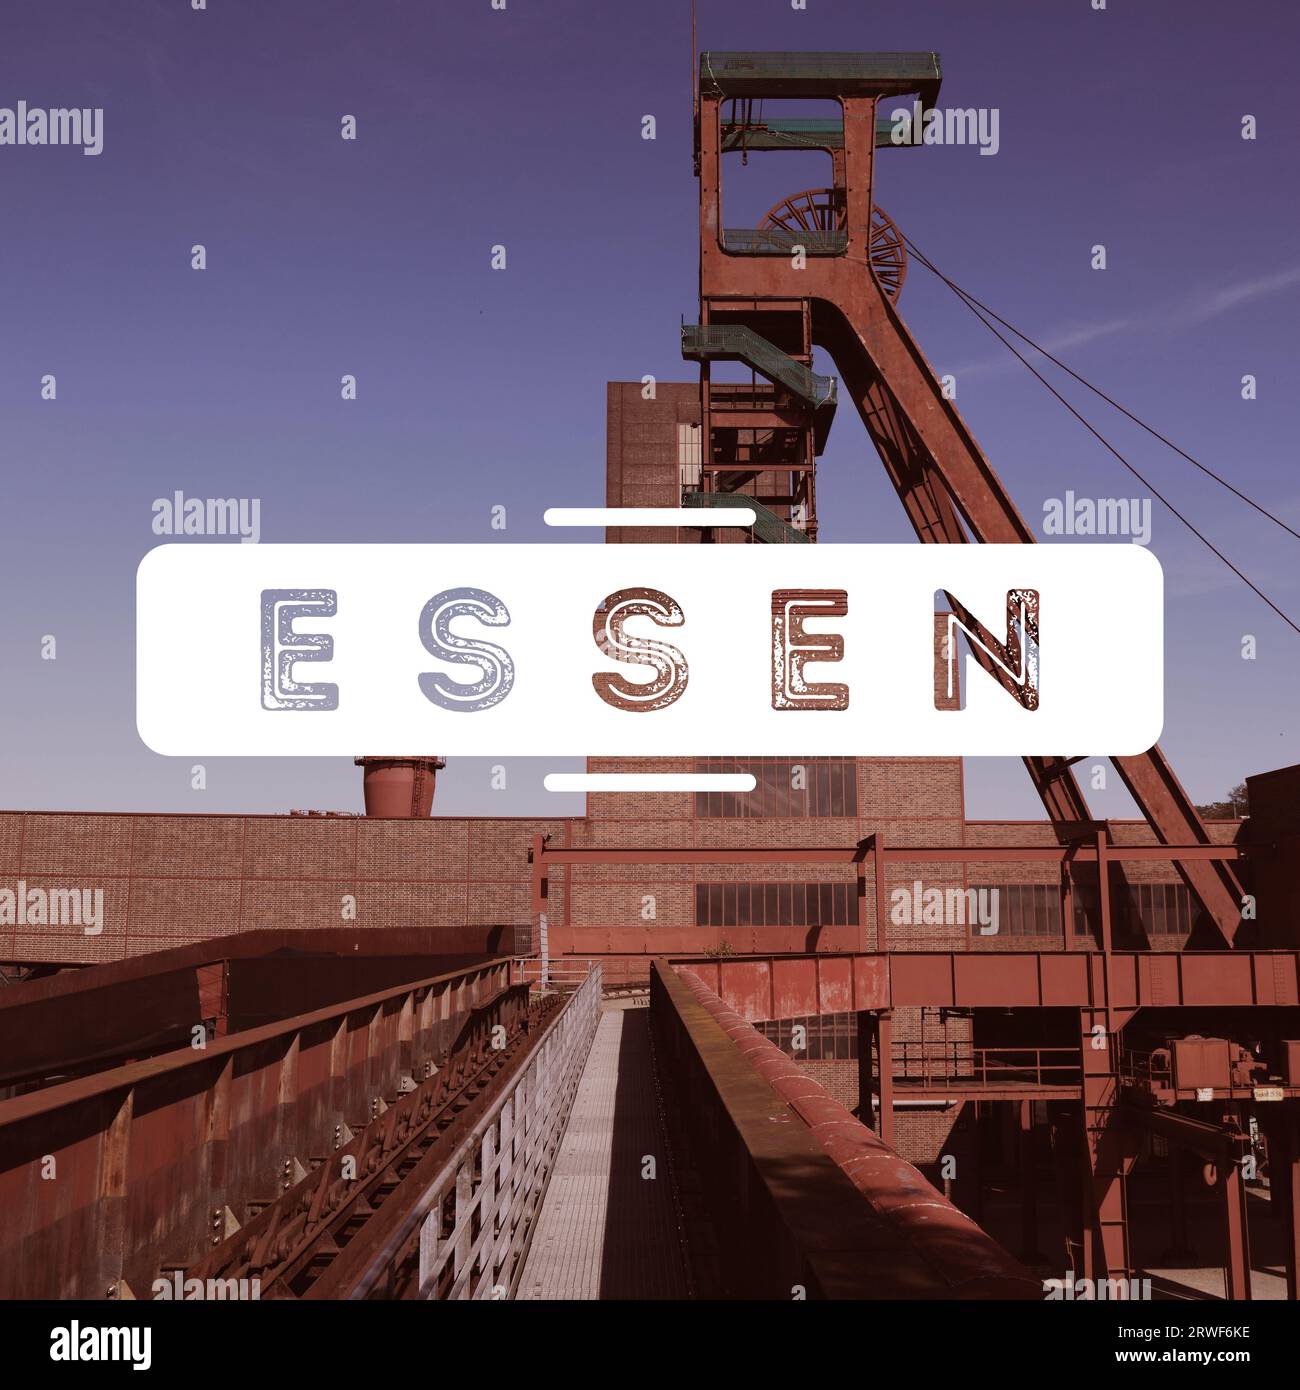 Essen, Allemagne. Carte postale photo moderne du nom de la ville. Carte textuelle de destination de voyage. Banque D'Images